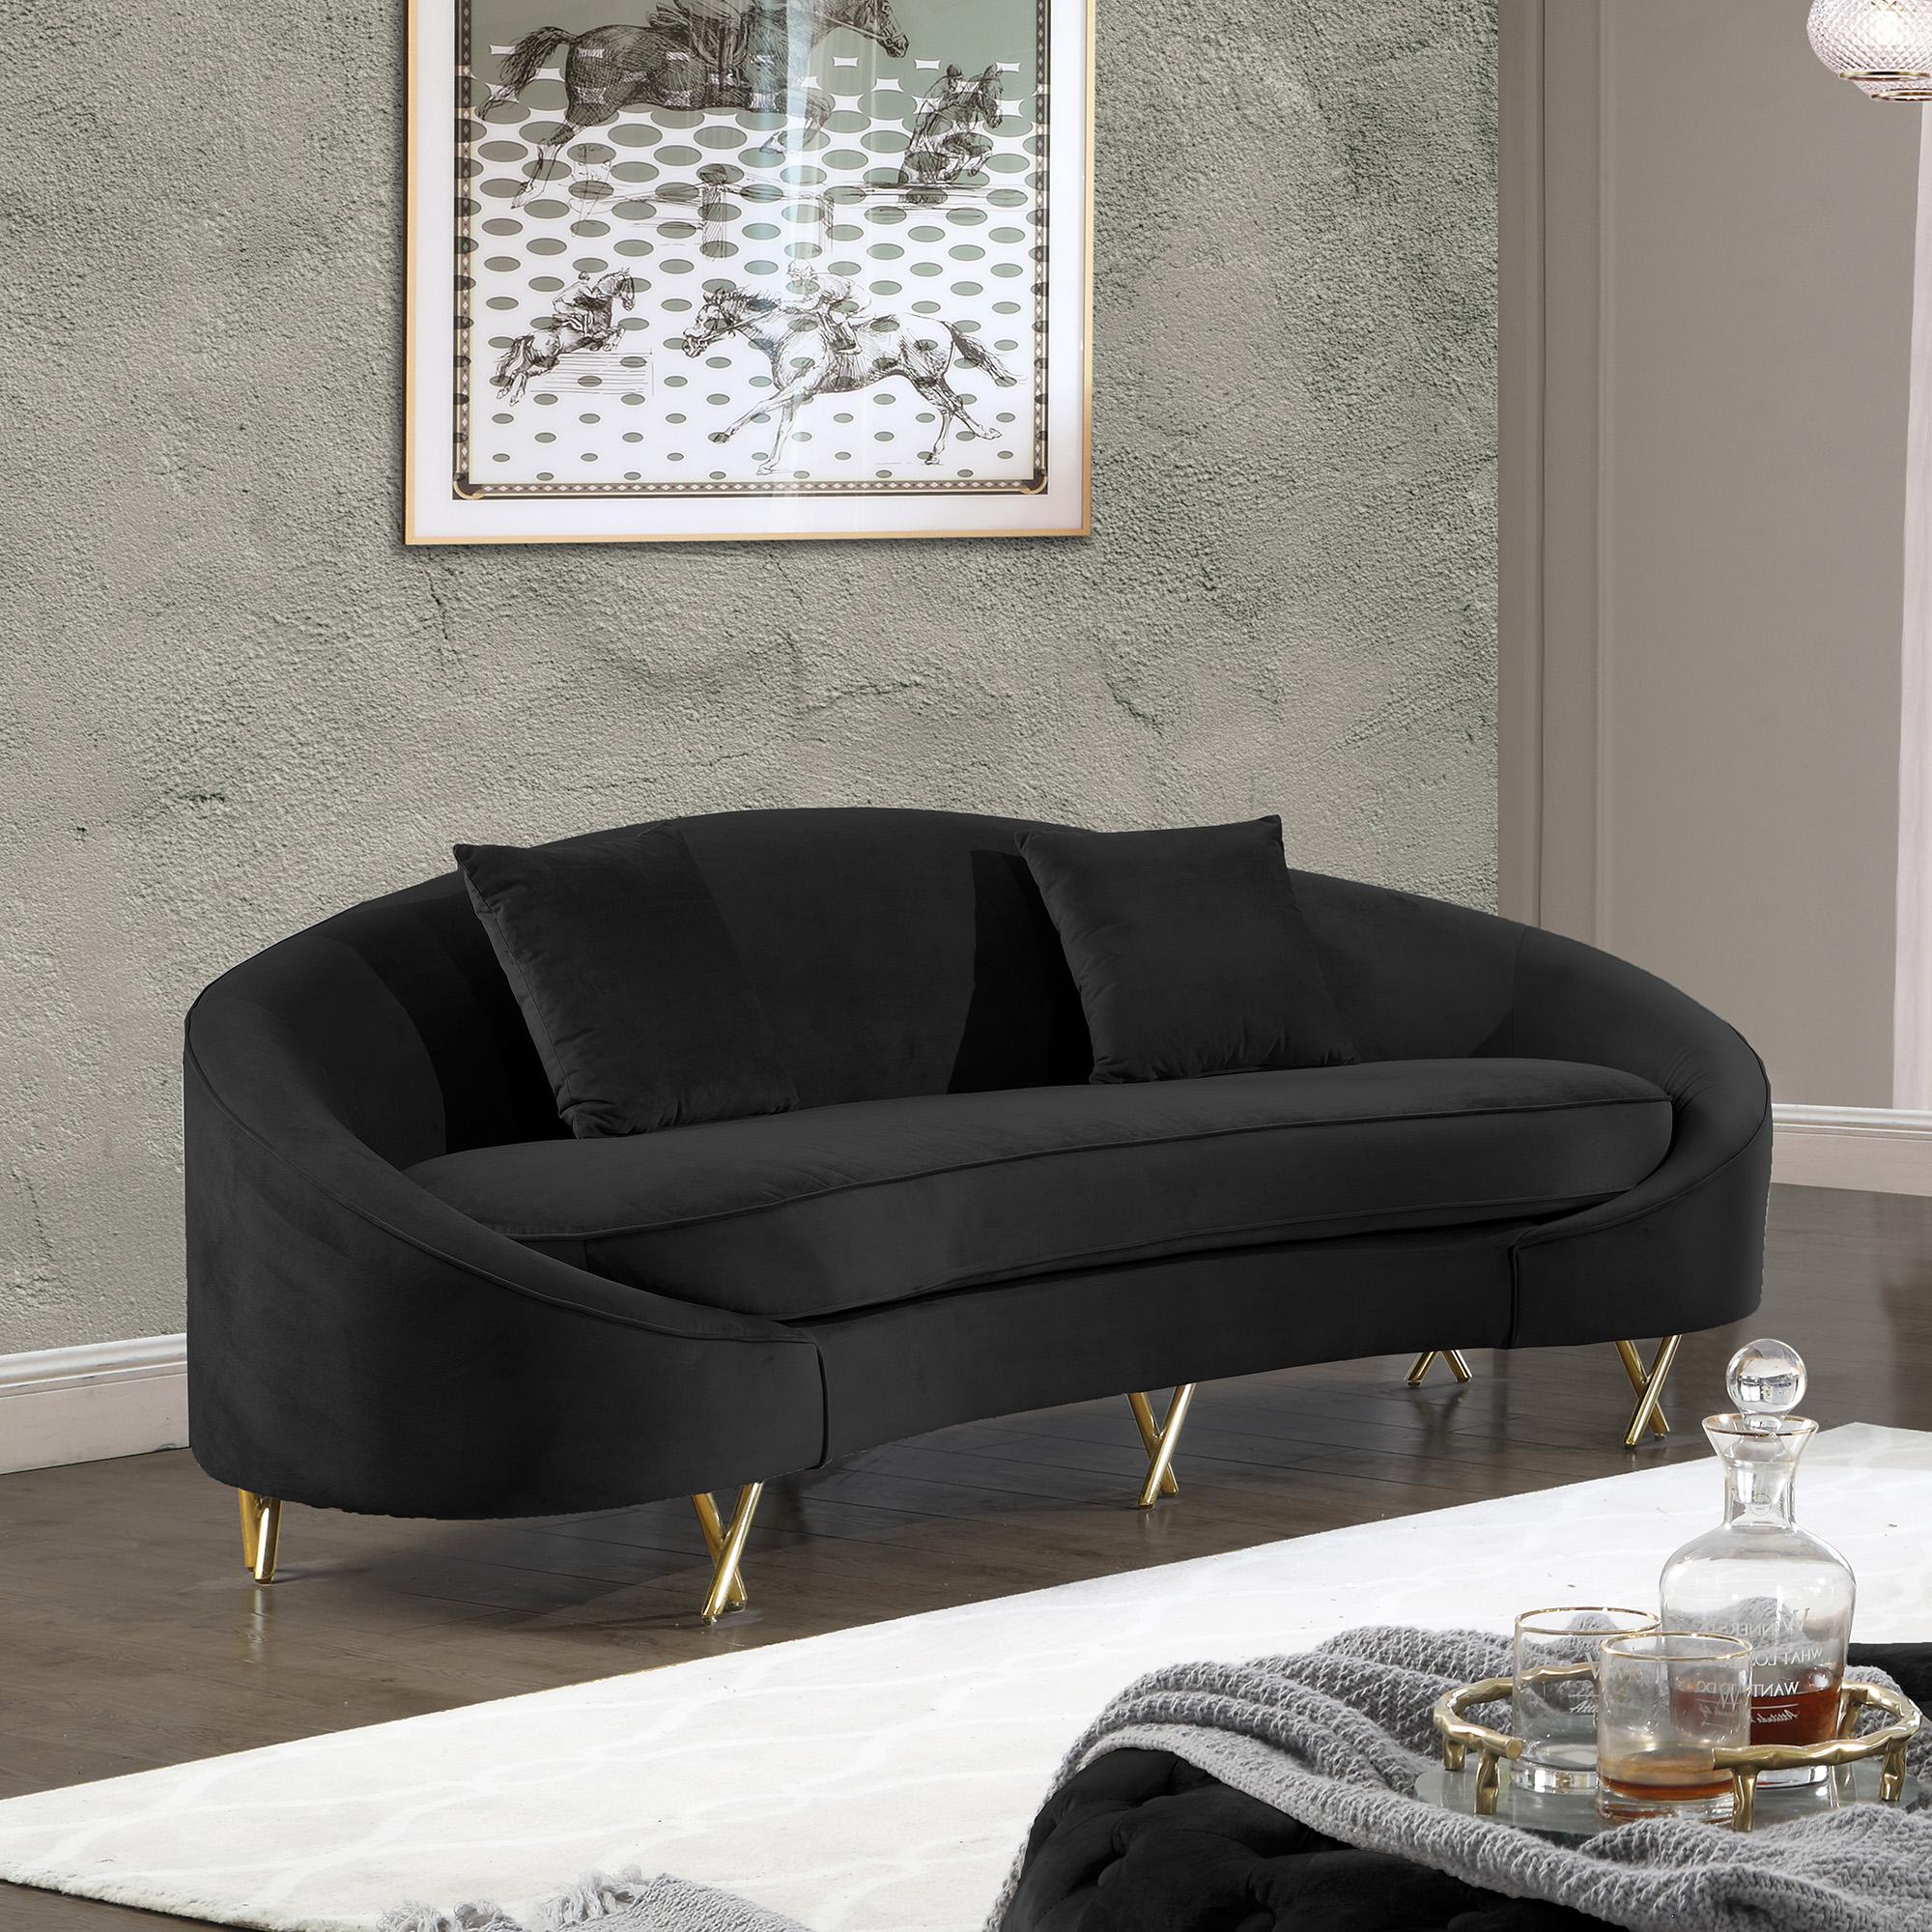 Contemporary, Modern Sofa SERPENTINE 679Black-S 679Black-S in Chrome, Gold, Black Velvet